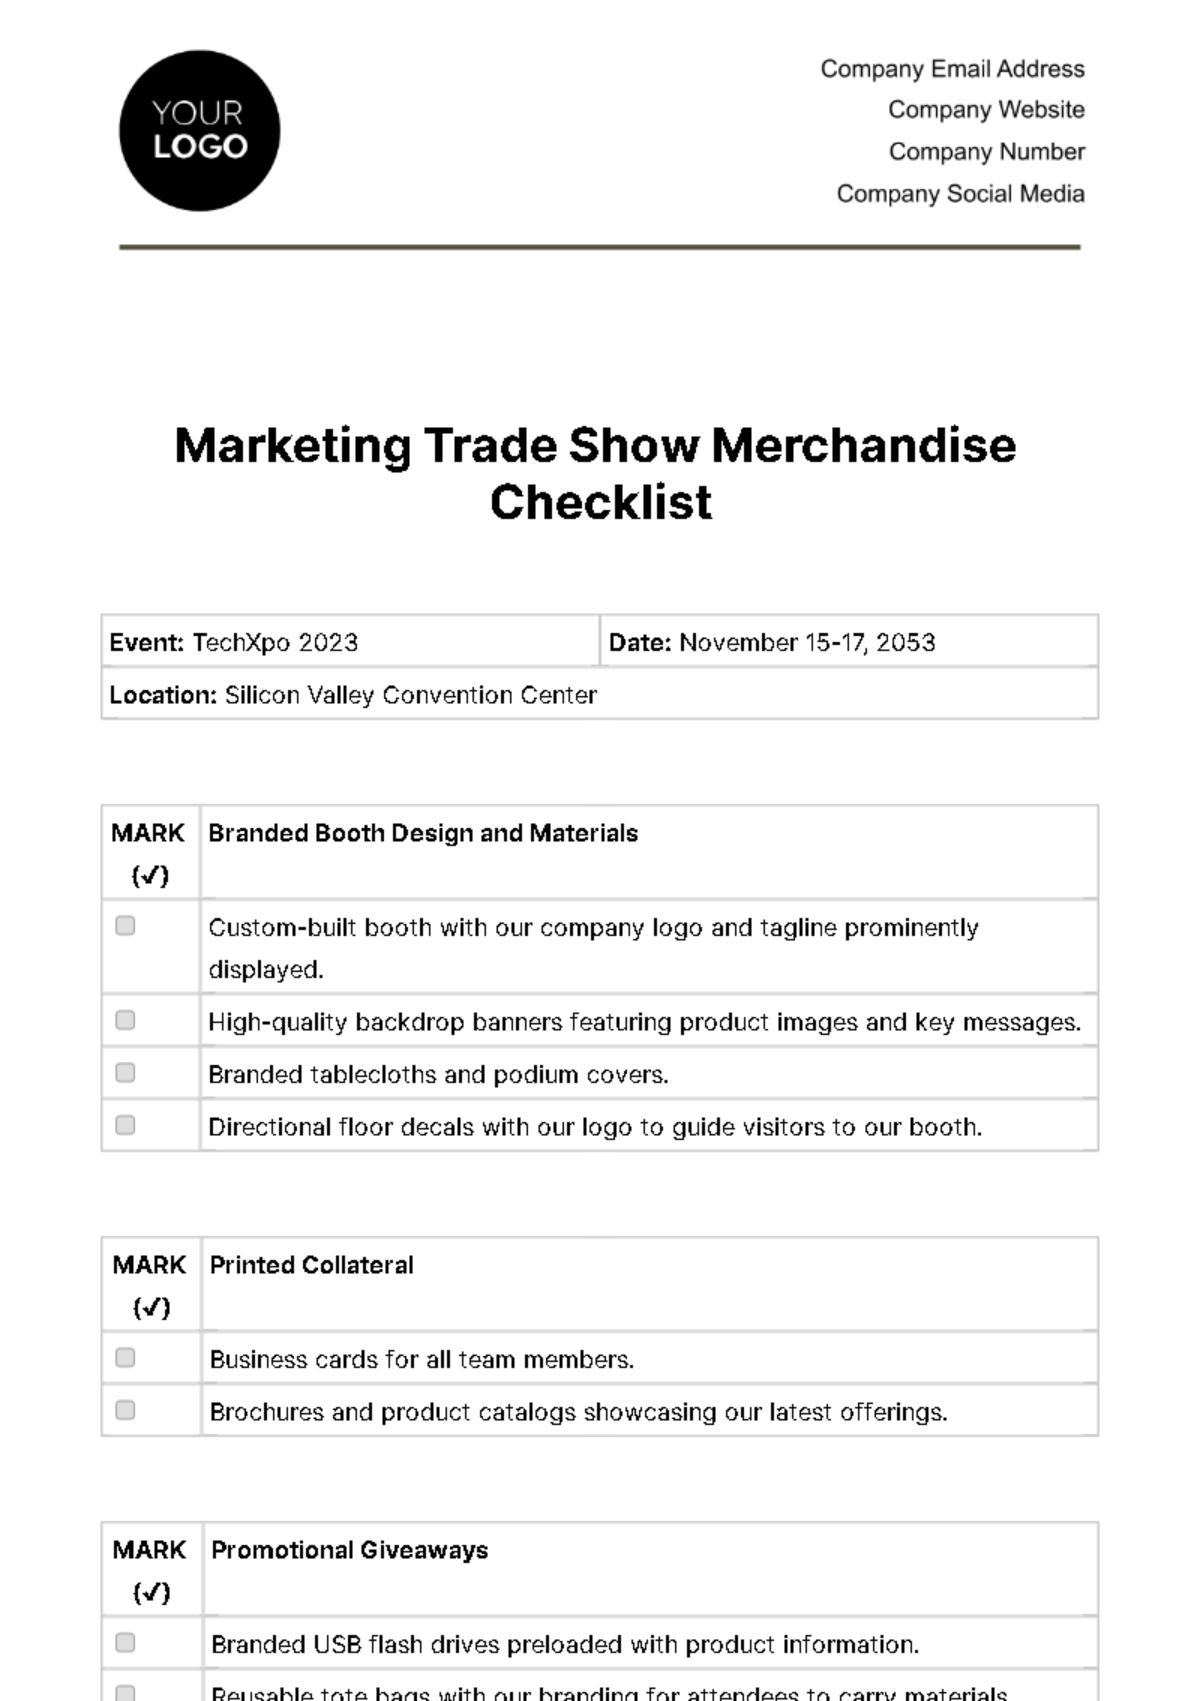 Marketing Trade Show Merchandise Checklist Template